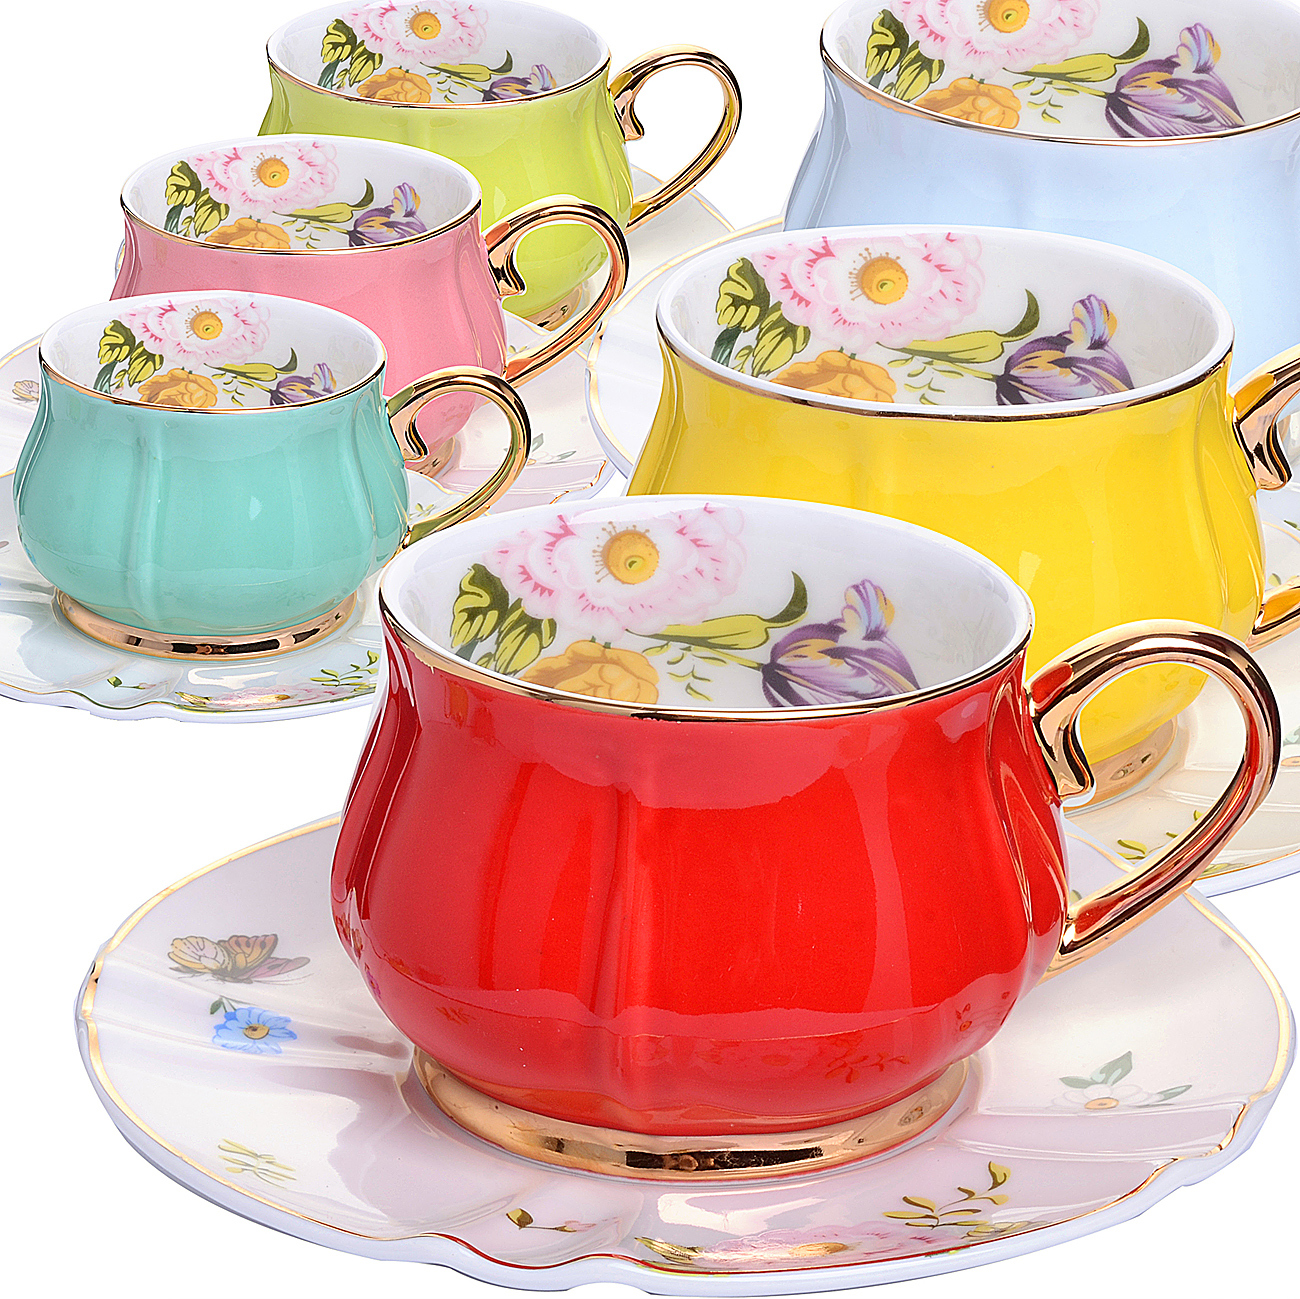 Чайные сервизы Loraine 29129 12 предметов 6 персон фарфор цвет .